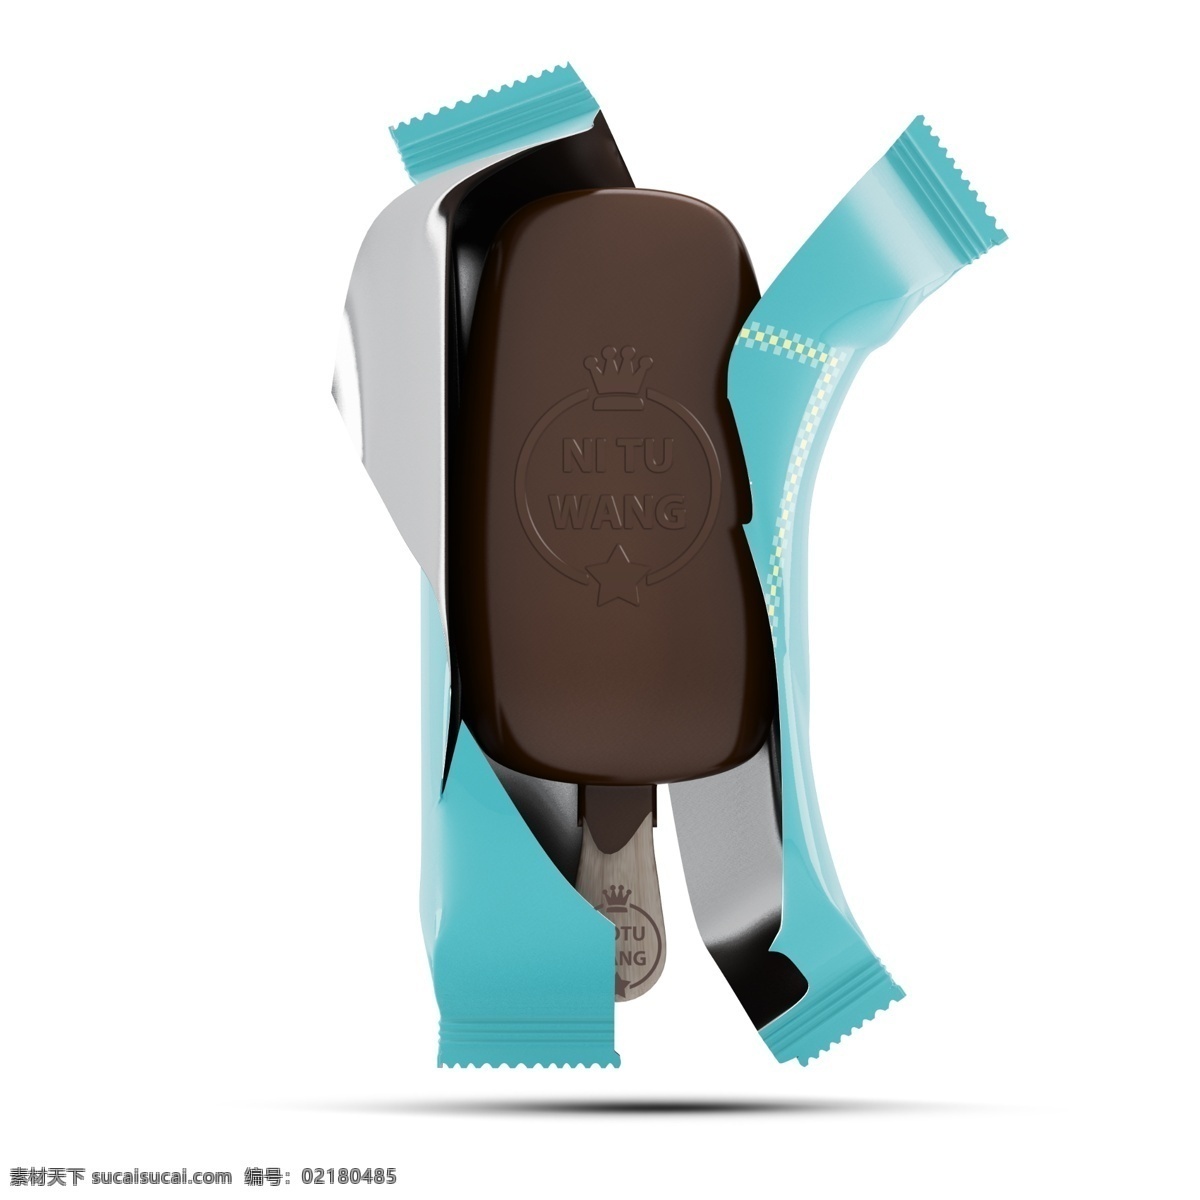 雪糕样机 冷饮包装 雪糕包装袋 冰激凌 冰棍 巧克力冷饮 巧克力 包装袋 雪糕 样机 产品效果图 vi设计